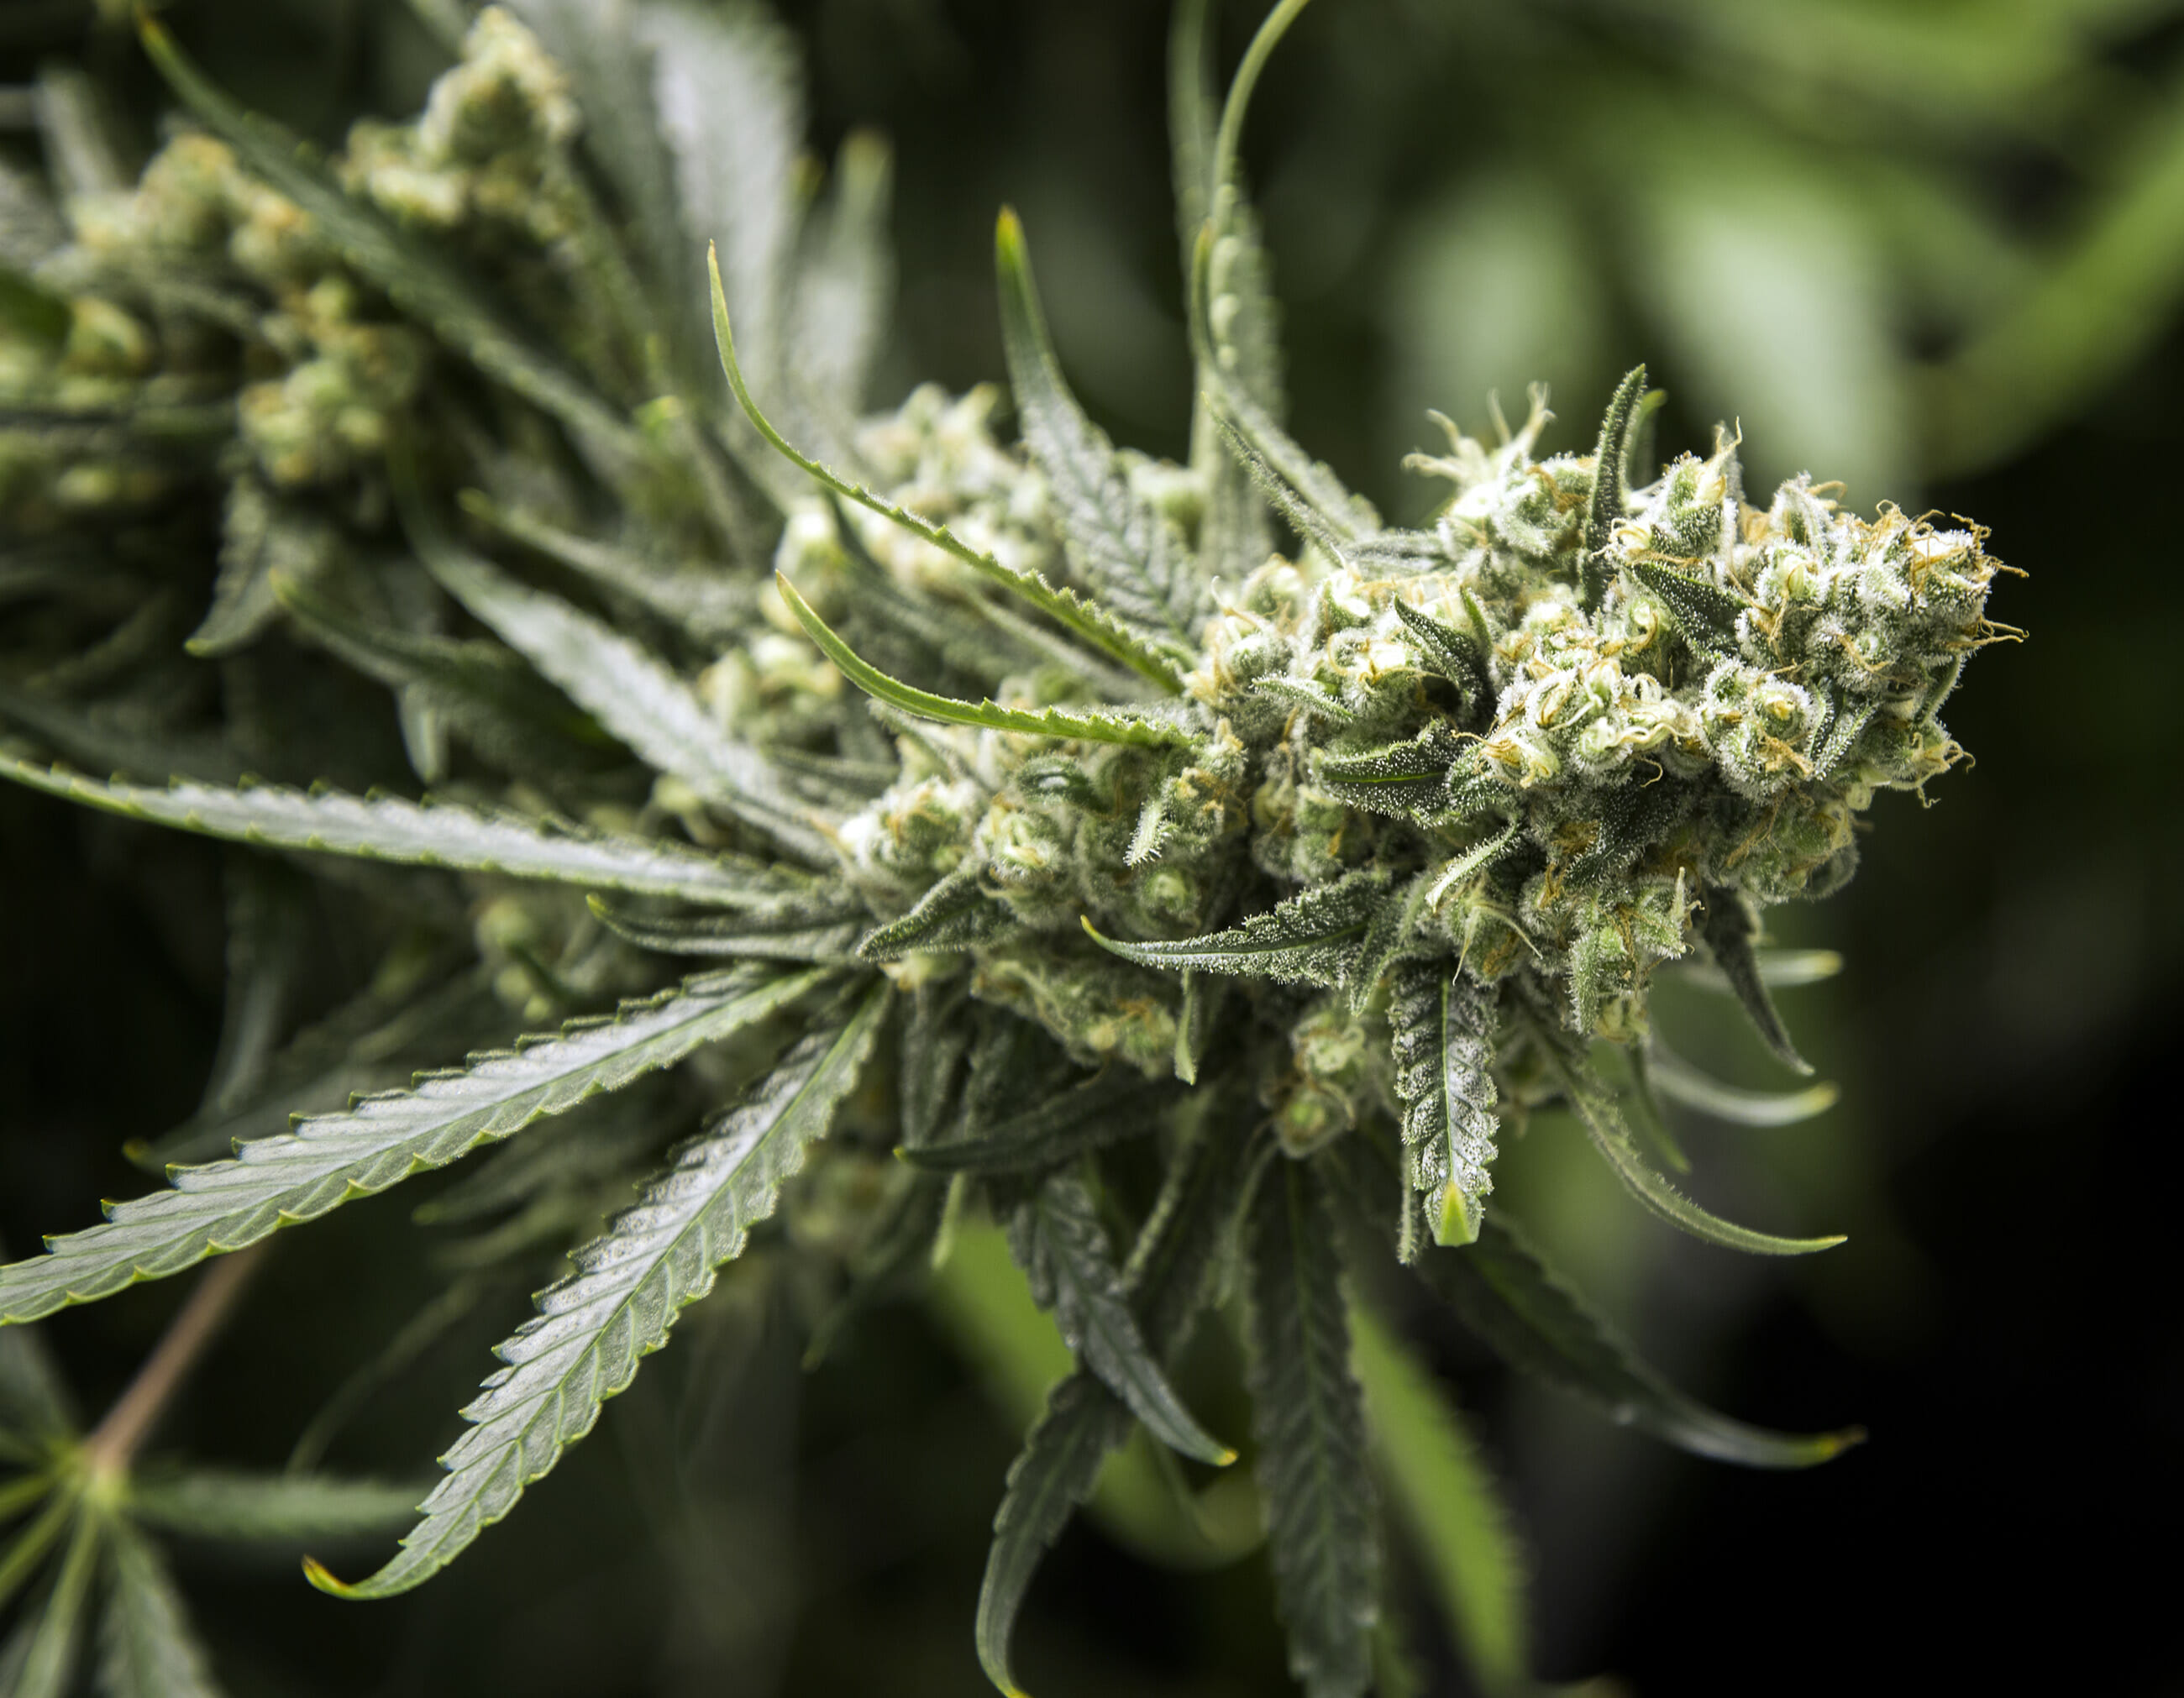 Cannabis plant ready for harvest